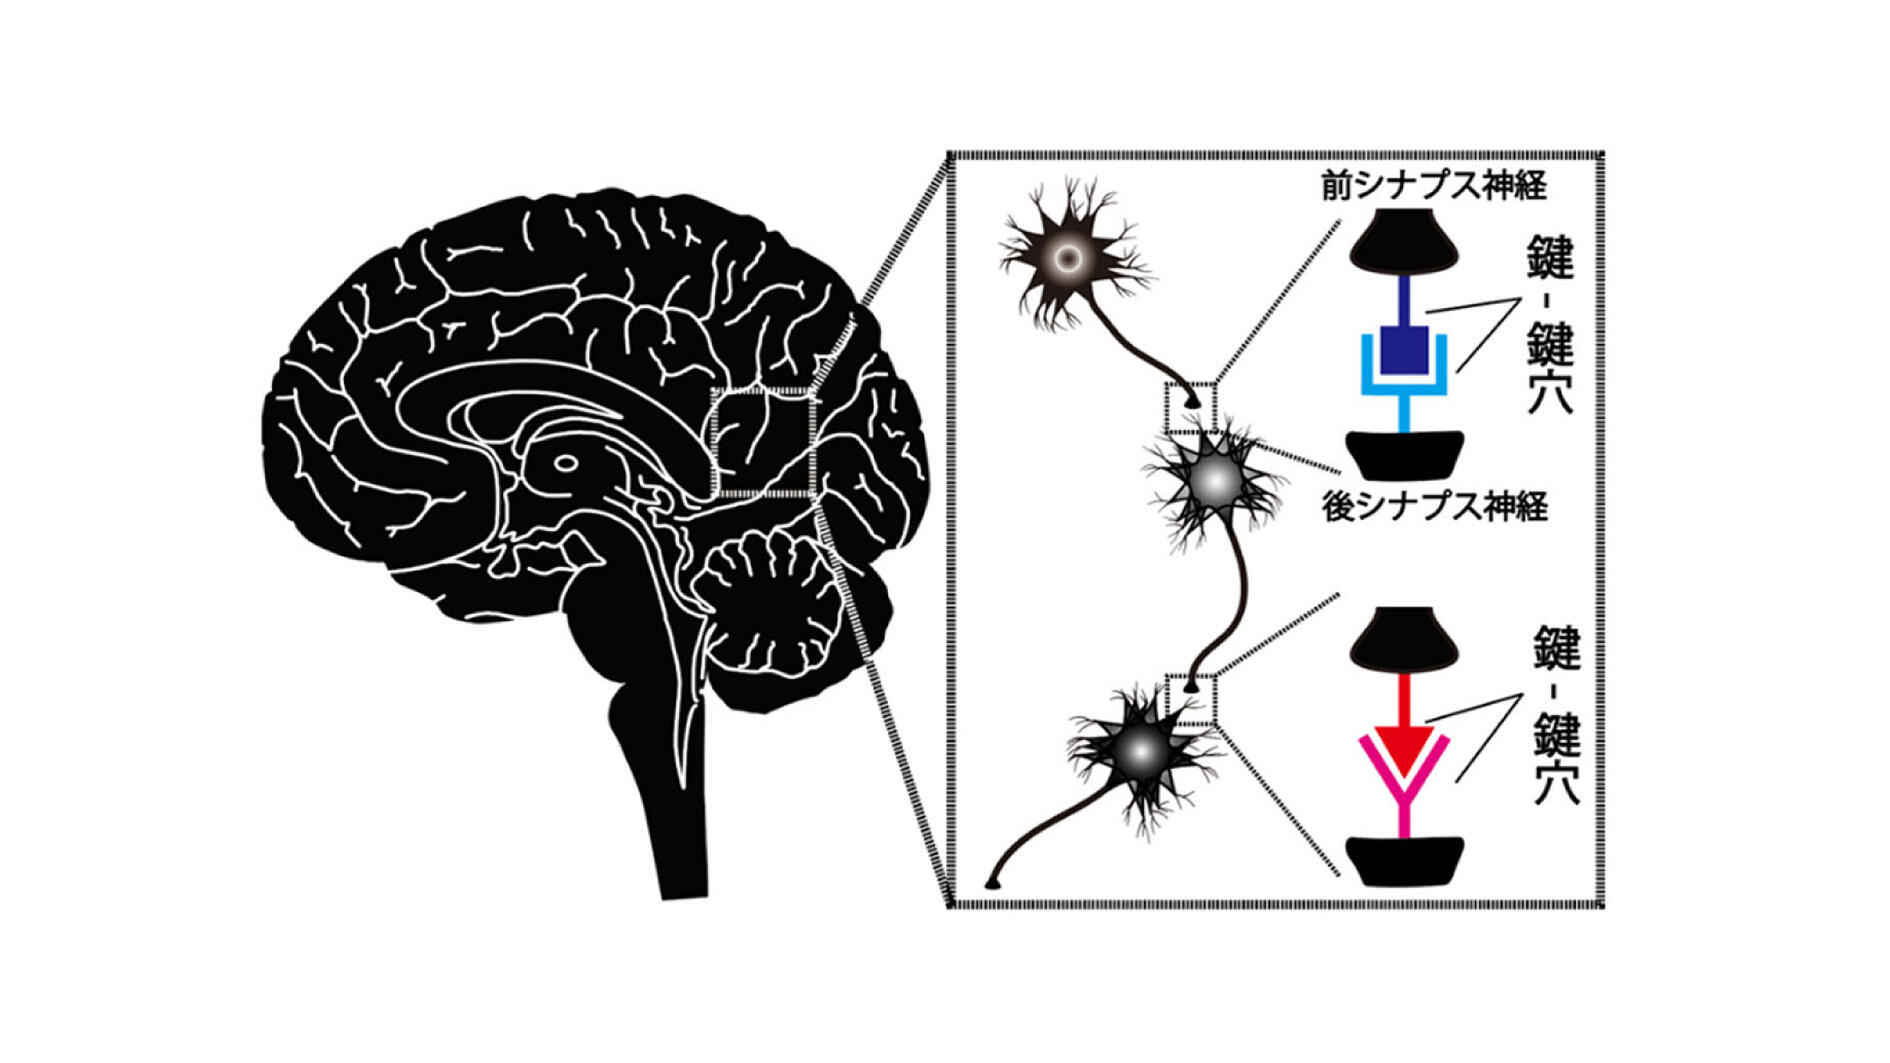 神経結合を適正化する、新たなタンパク質機序を解明　－タンパク質複合体によって「不適切な」神経結合が抑制され、「適切な」神経結合を形成－